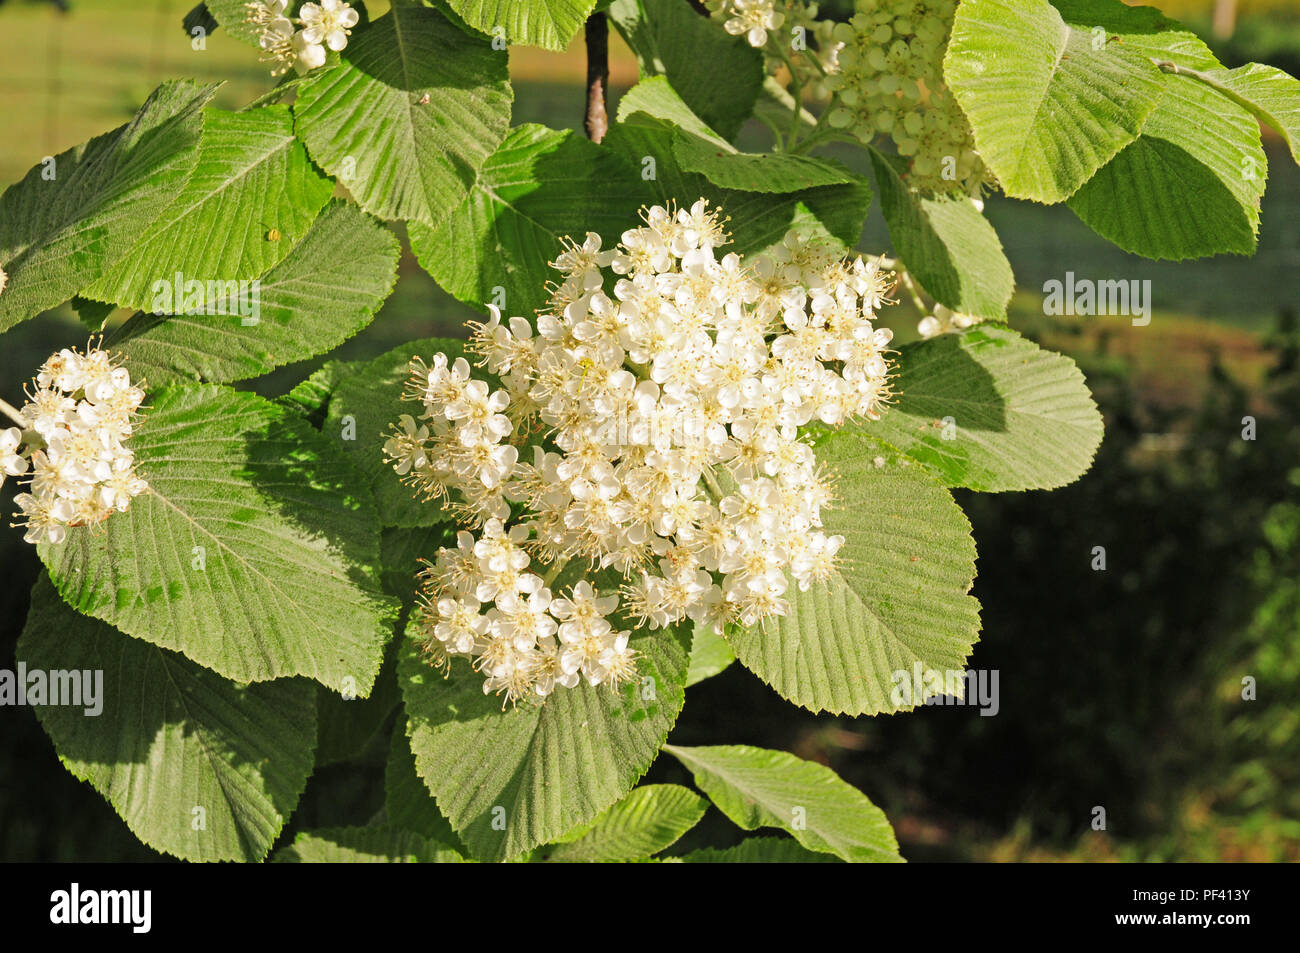 Opened flowers of Whitebeam tree Stock Photo